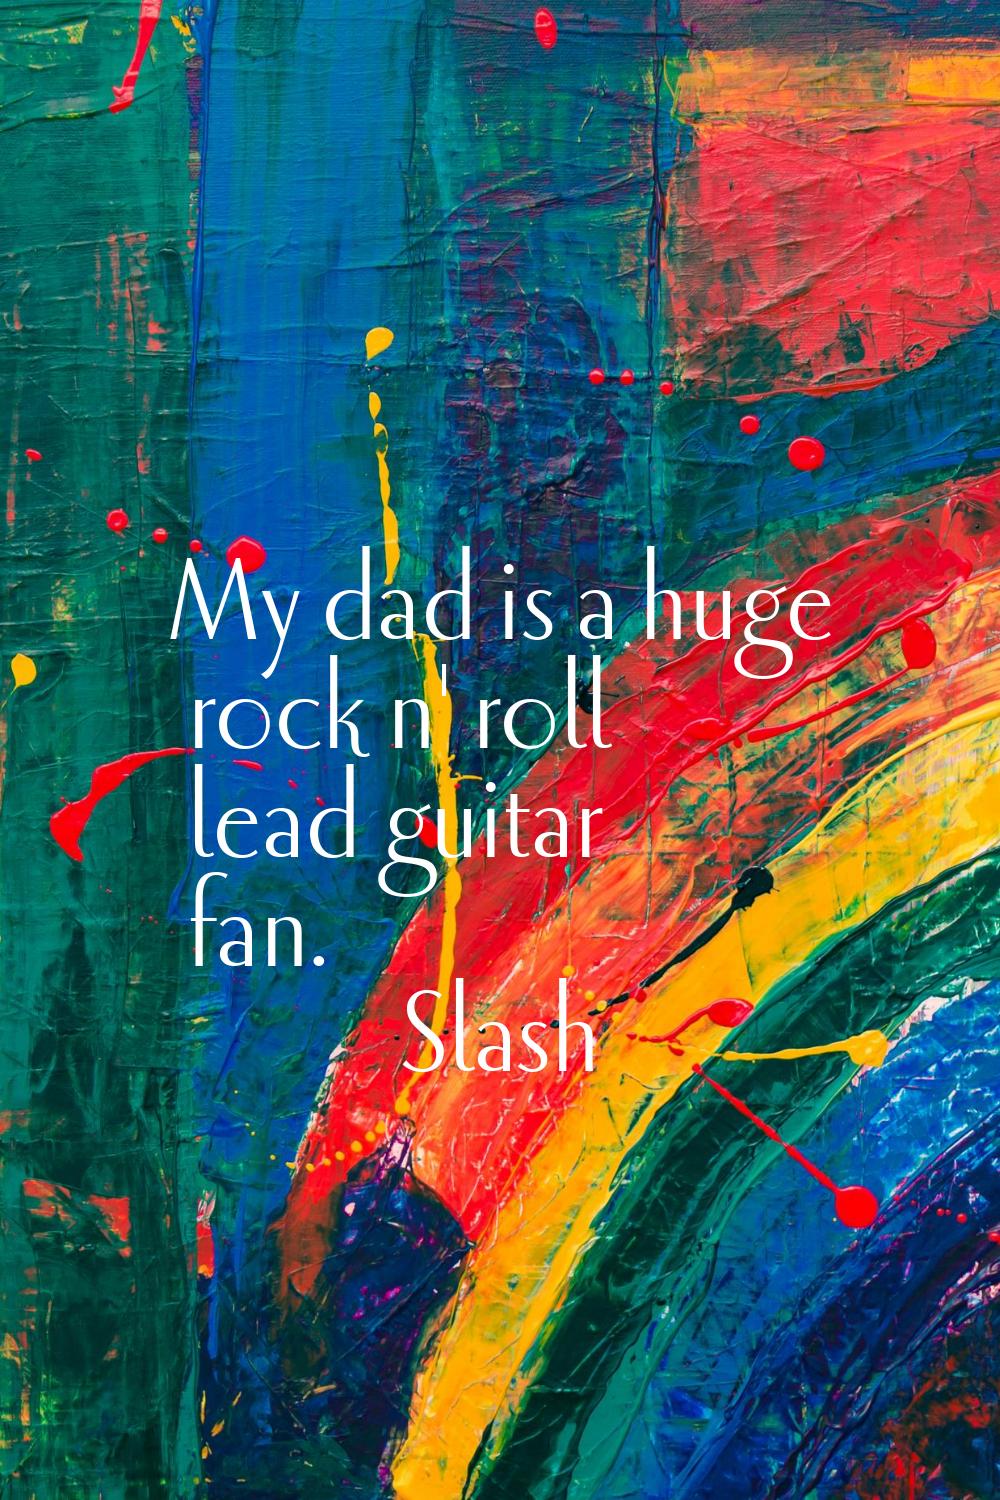 My dad is a huge rock n' roll lead guitar fan.